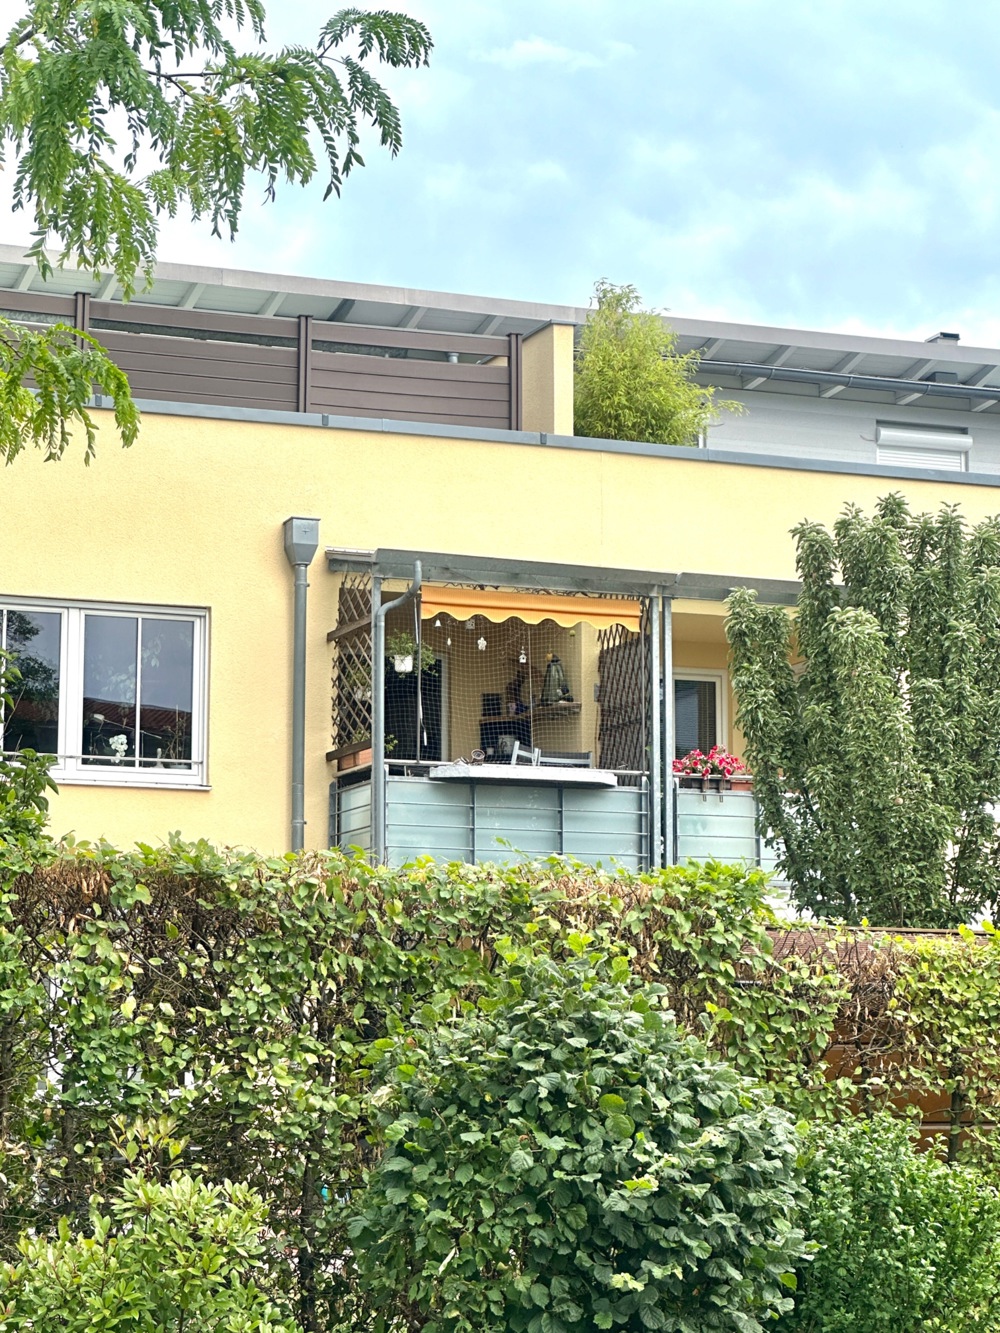 Familienfreundliche Wohnung mit zwei Balkone in ruhiger Wohnlage von Grün umgeben